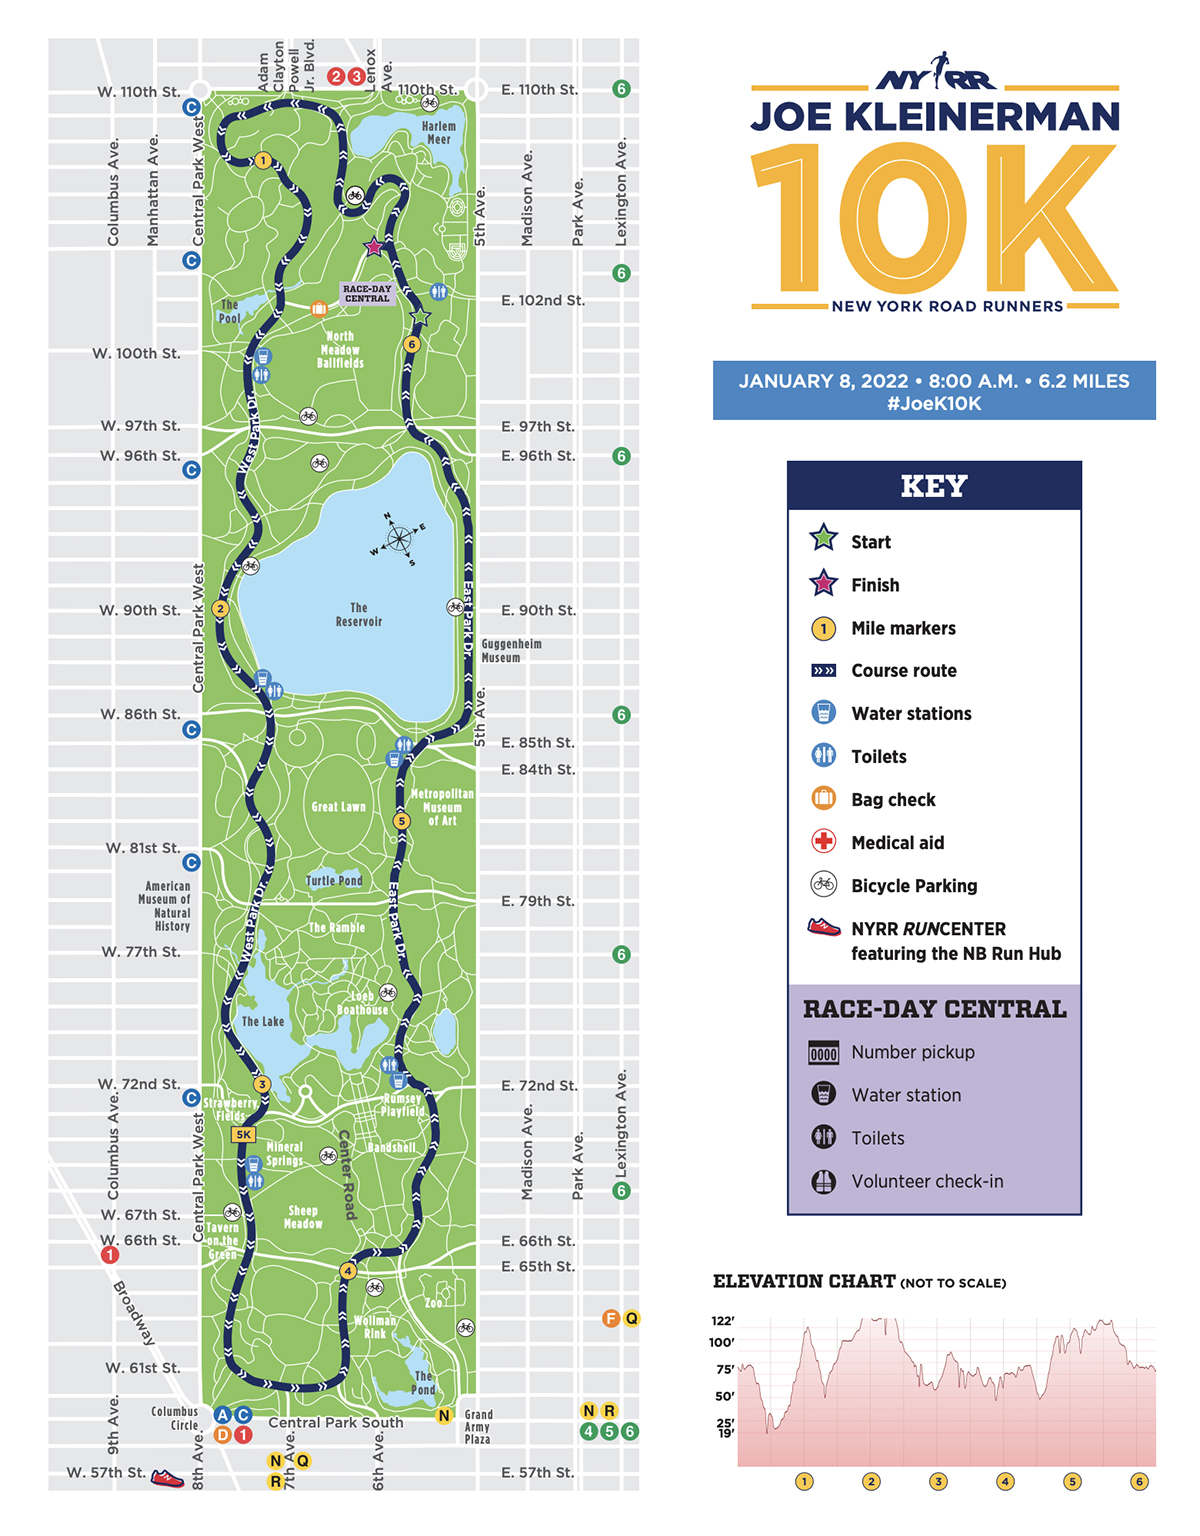 Joe Kleinerman 10K course map.